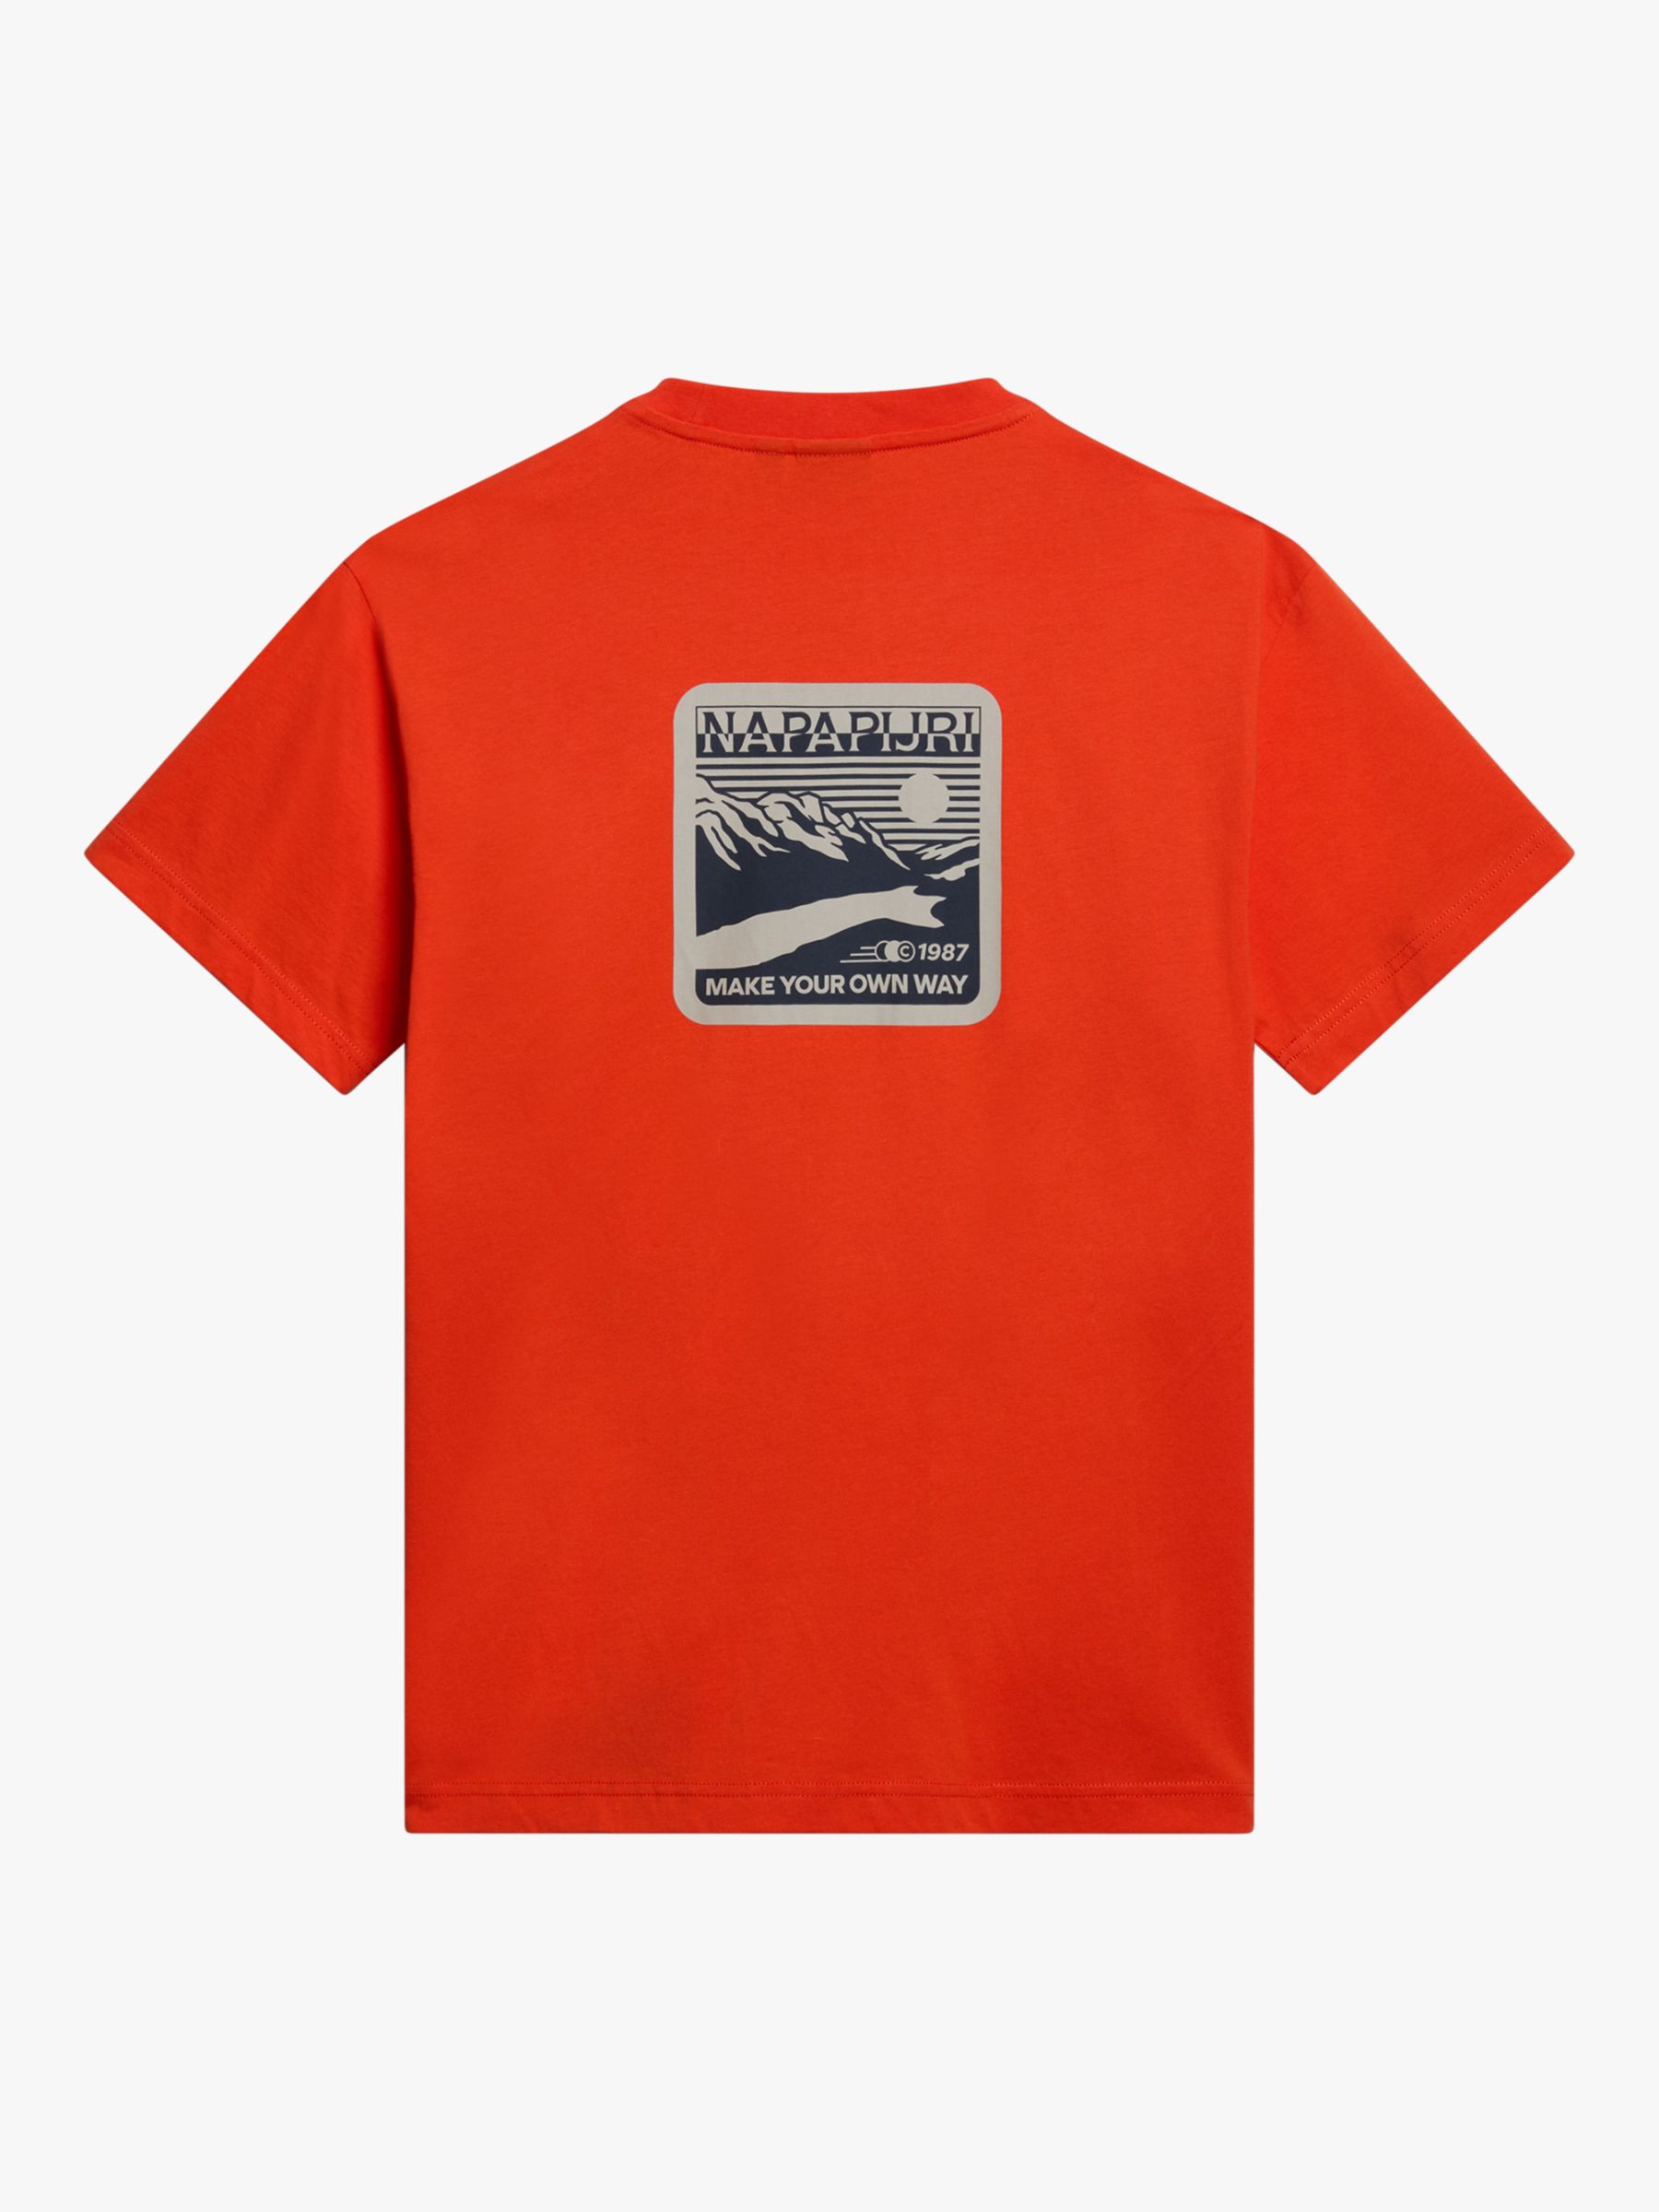 Napapijri Signature Gouin Short Sleeve T-Shirt, Orange, XL